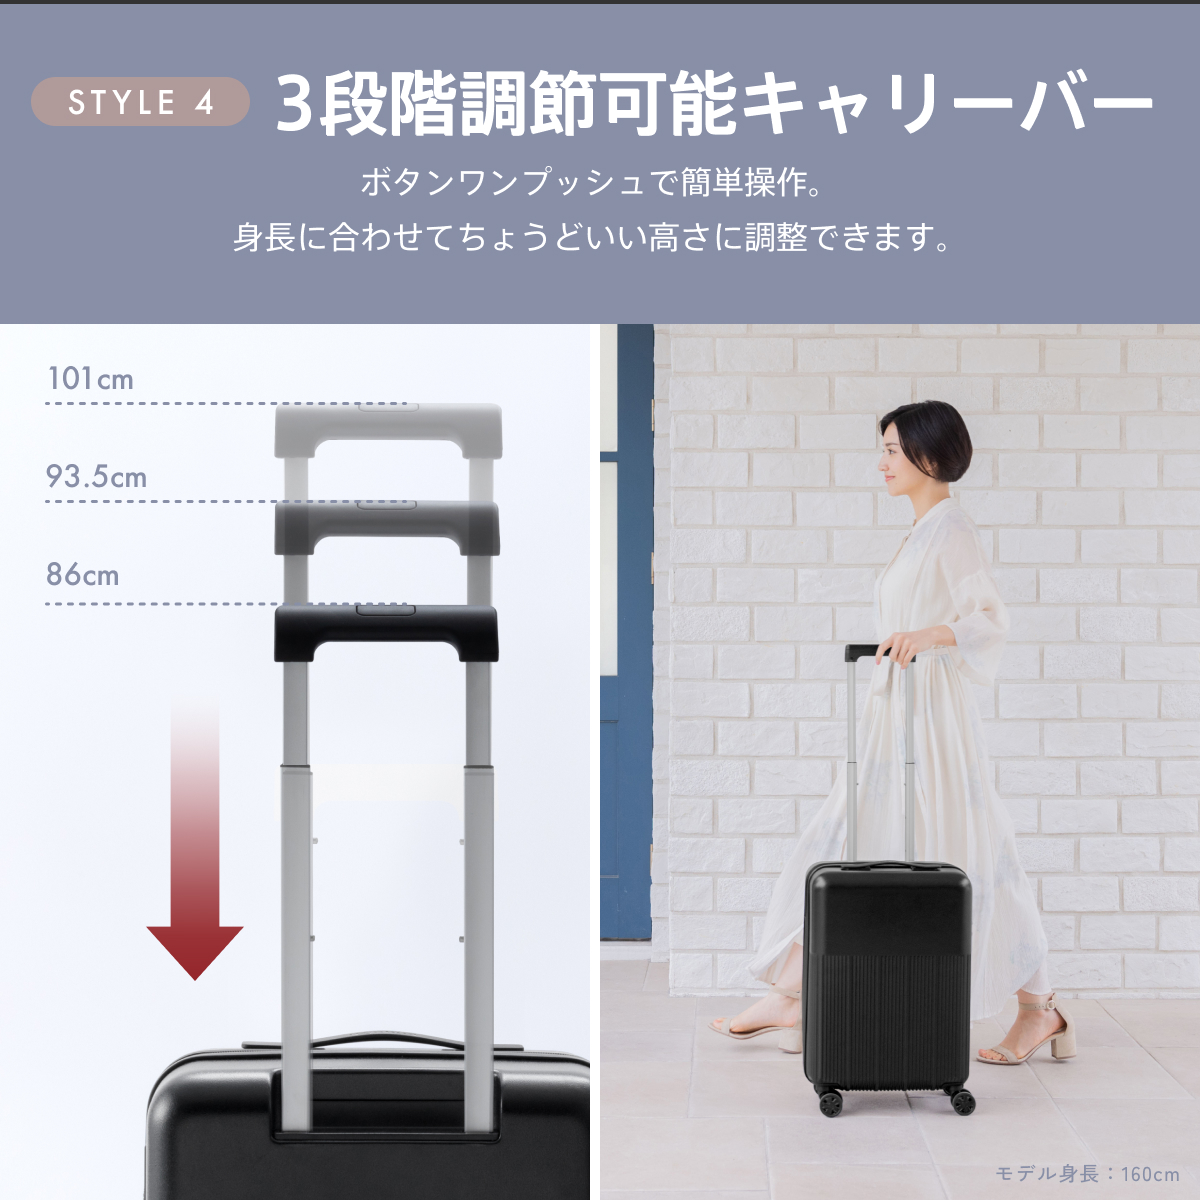 koguMi スーツケース UKU Sサイズ RPO素材 超軽量2.0kg 日本企業 キャリーケース 機内持ち込み 高機能 高品質 大容量  超静音キャスターファスナー TSA008ロック